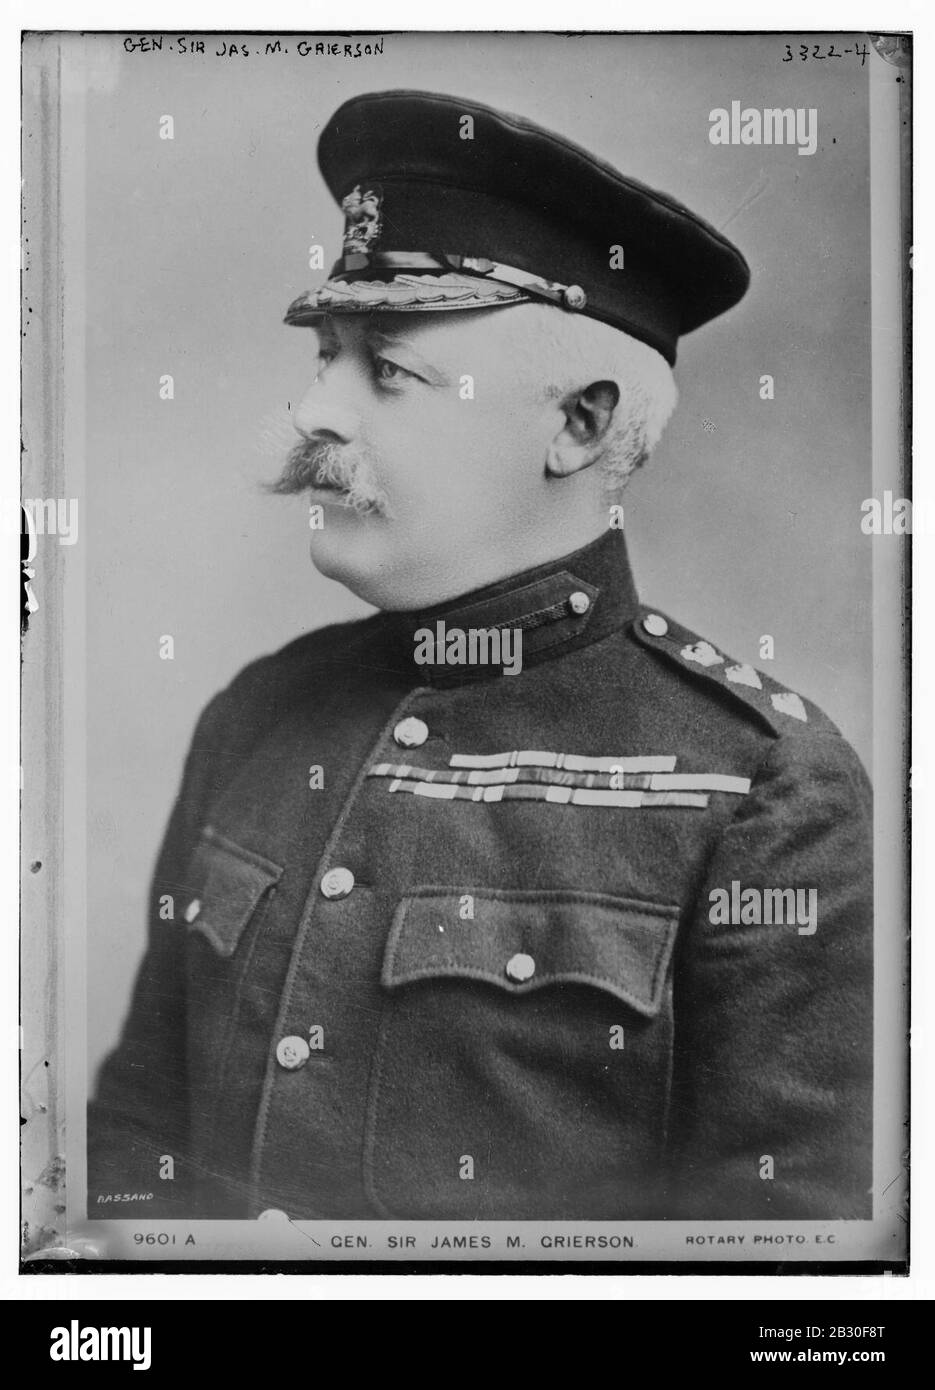 Gen. Sir Jas. M. Grierson Foto Stock